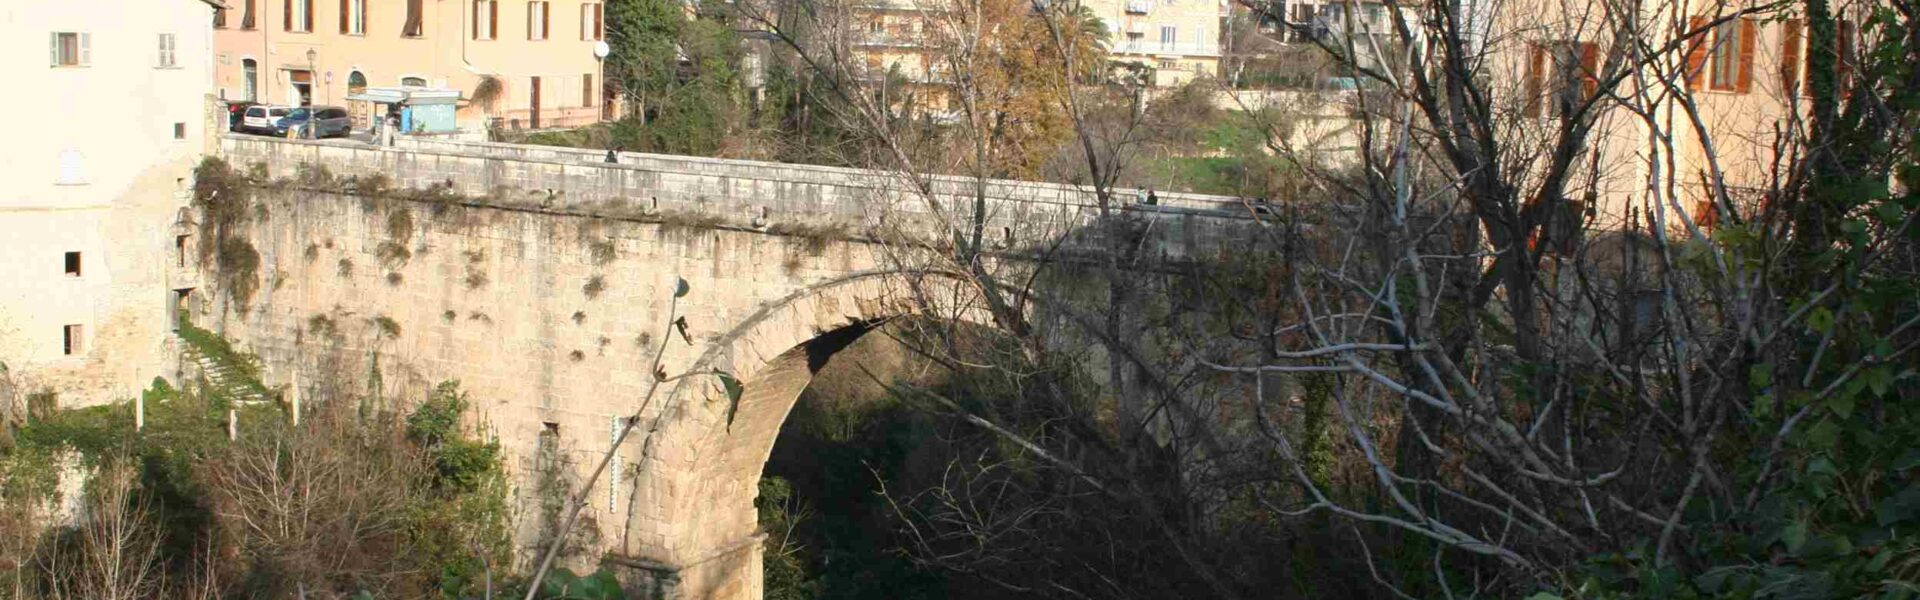 ponte romano di ascoli piceno